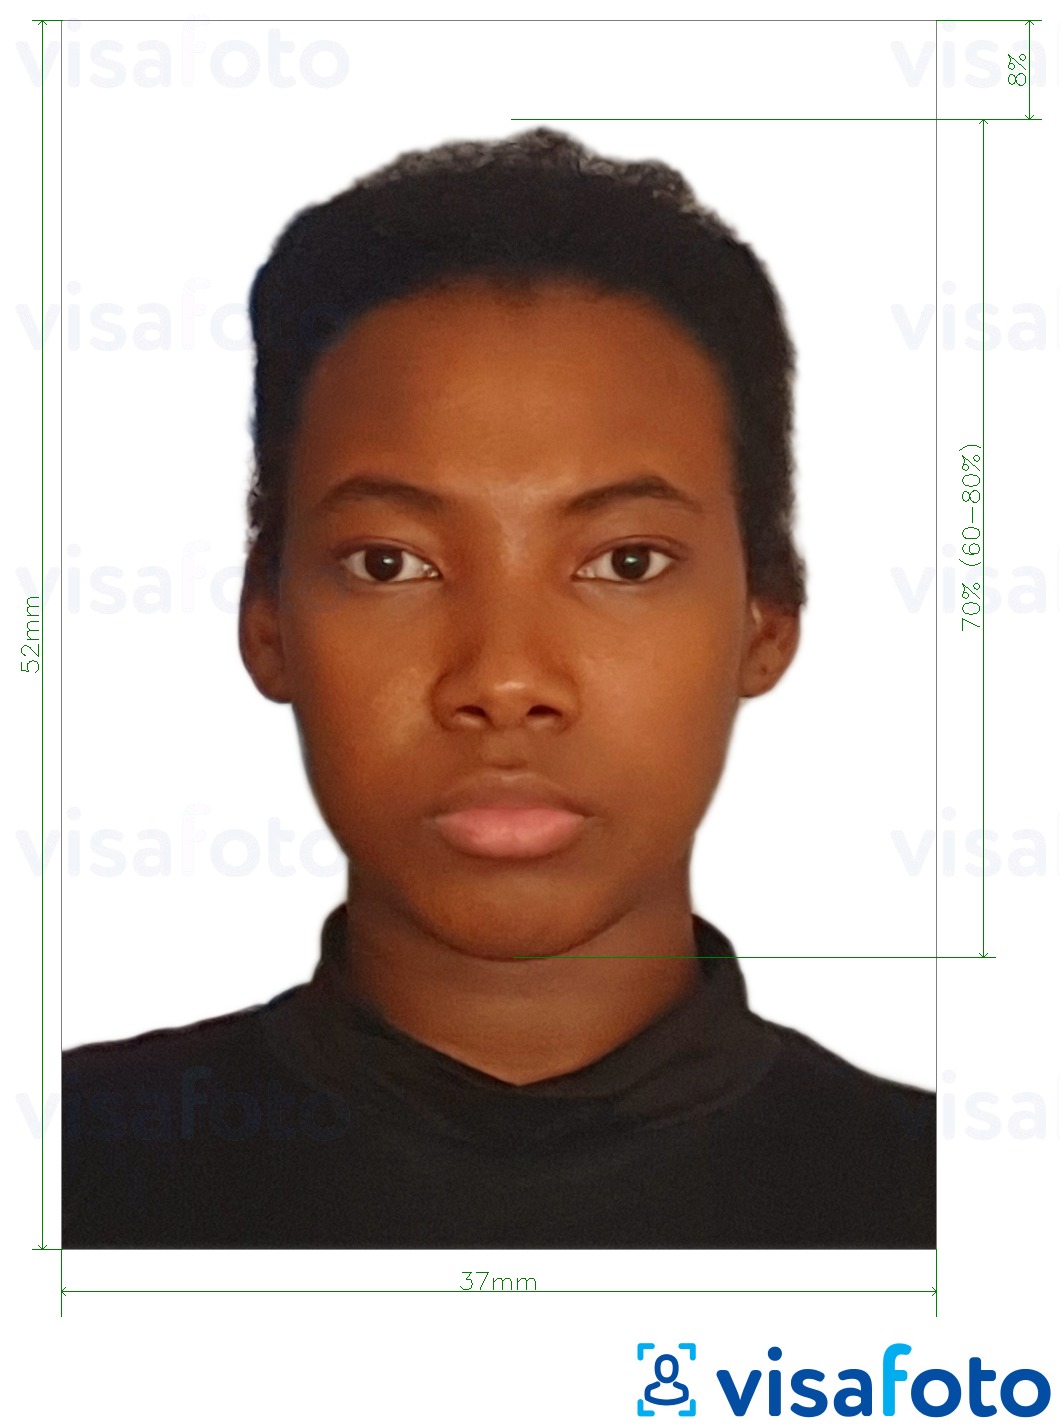 Exemple de foto per a Passaport de Namíbia 37x52mm (3.7x5.2 cm) amb la mida exacta especificada